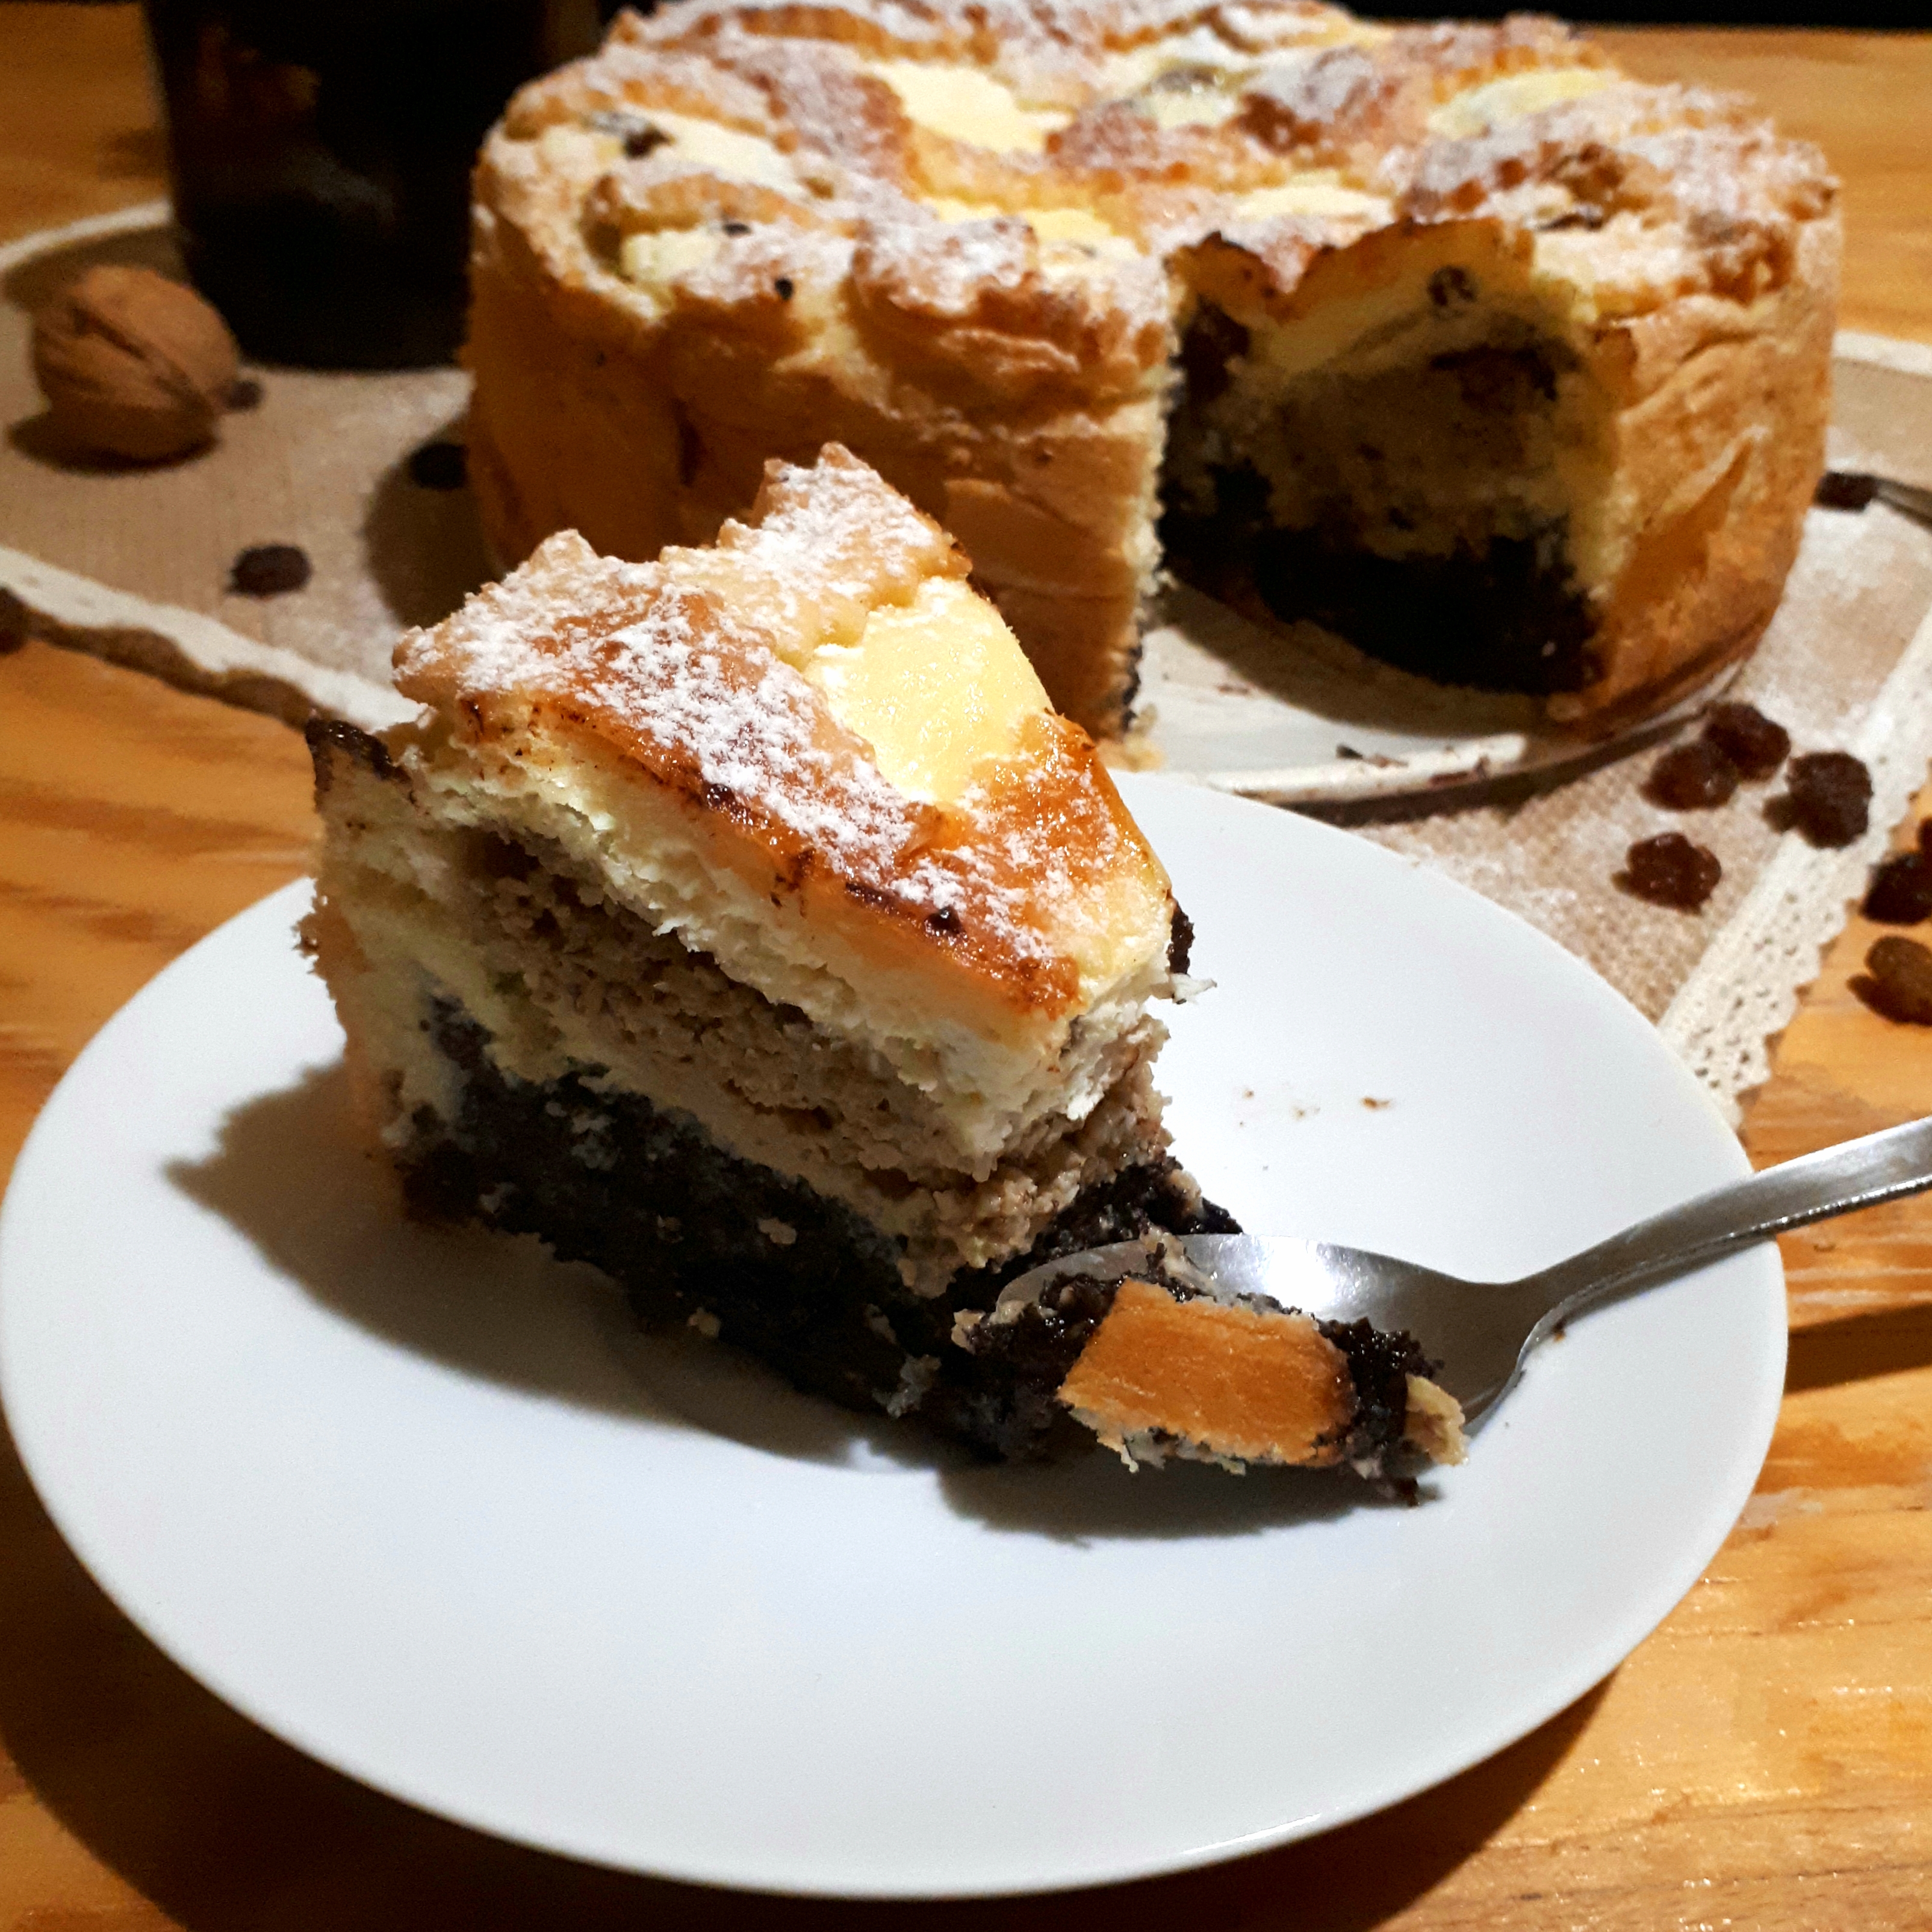 Torta štedrák posypaná práškovým cukrom prírodné filcové prestieranie na drevenom stole okolo hrozienka vlašský orech v pozadí dóza so slivkovým lekvárom v popredí kúsok torty na bielom tanieriku lyžička